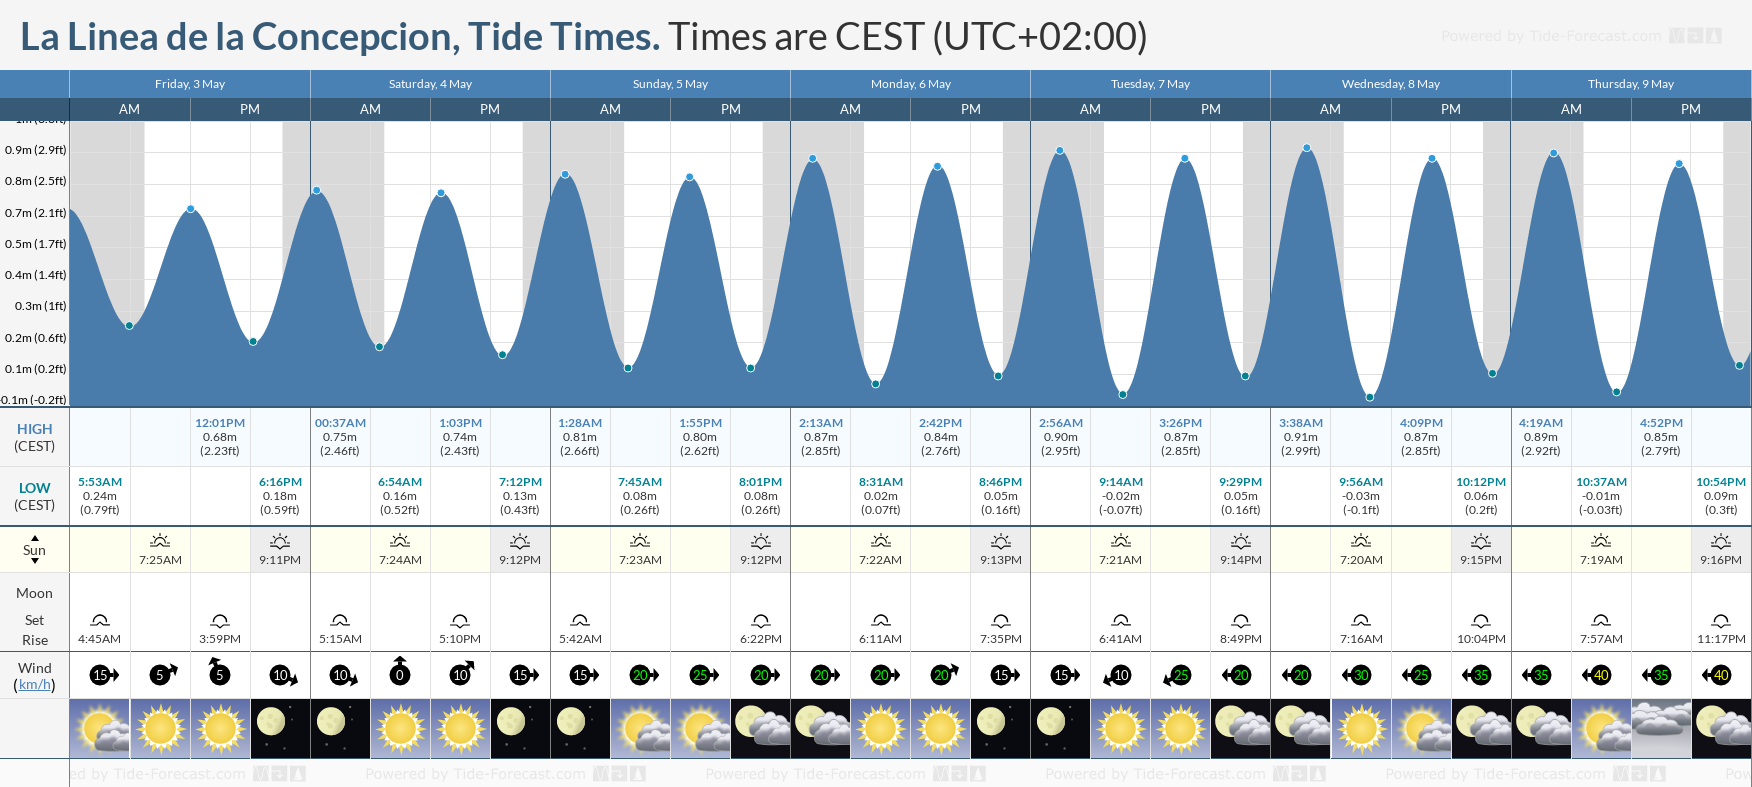 La Linea de la Concepcion Tide Chart including high and low tide times for the next 7 days